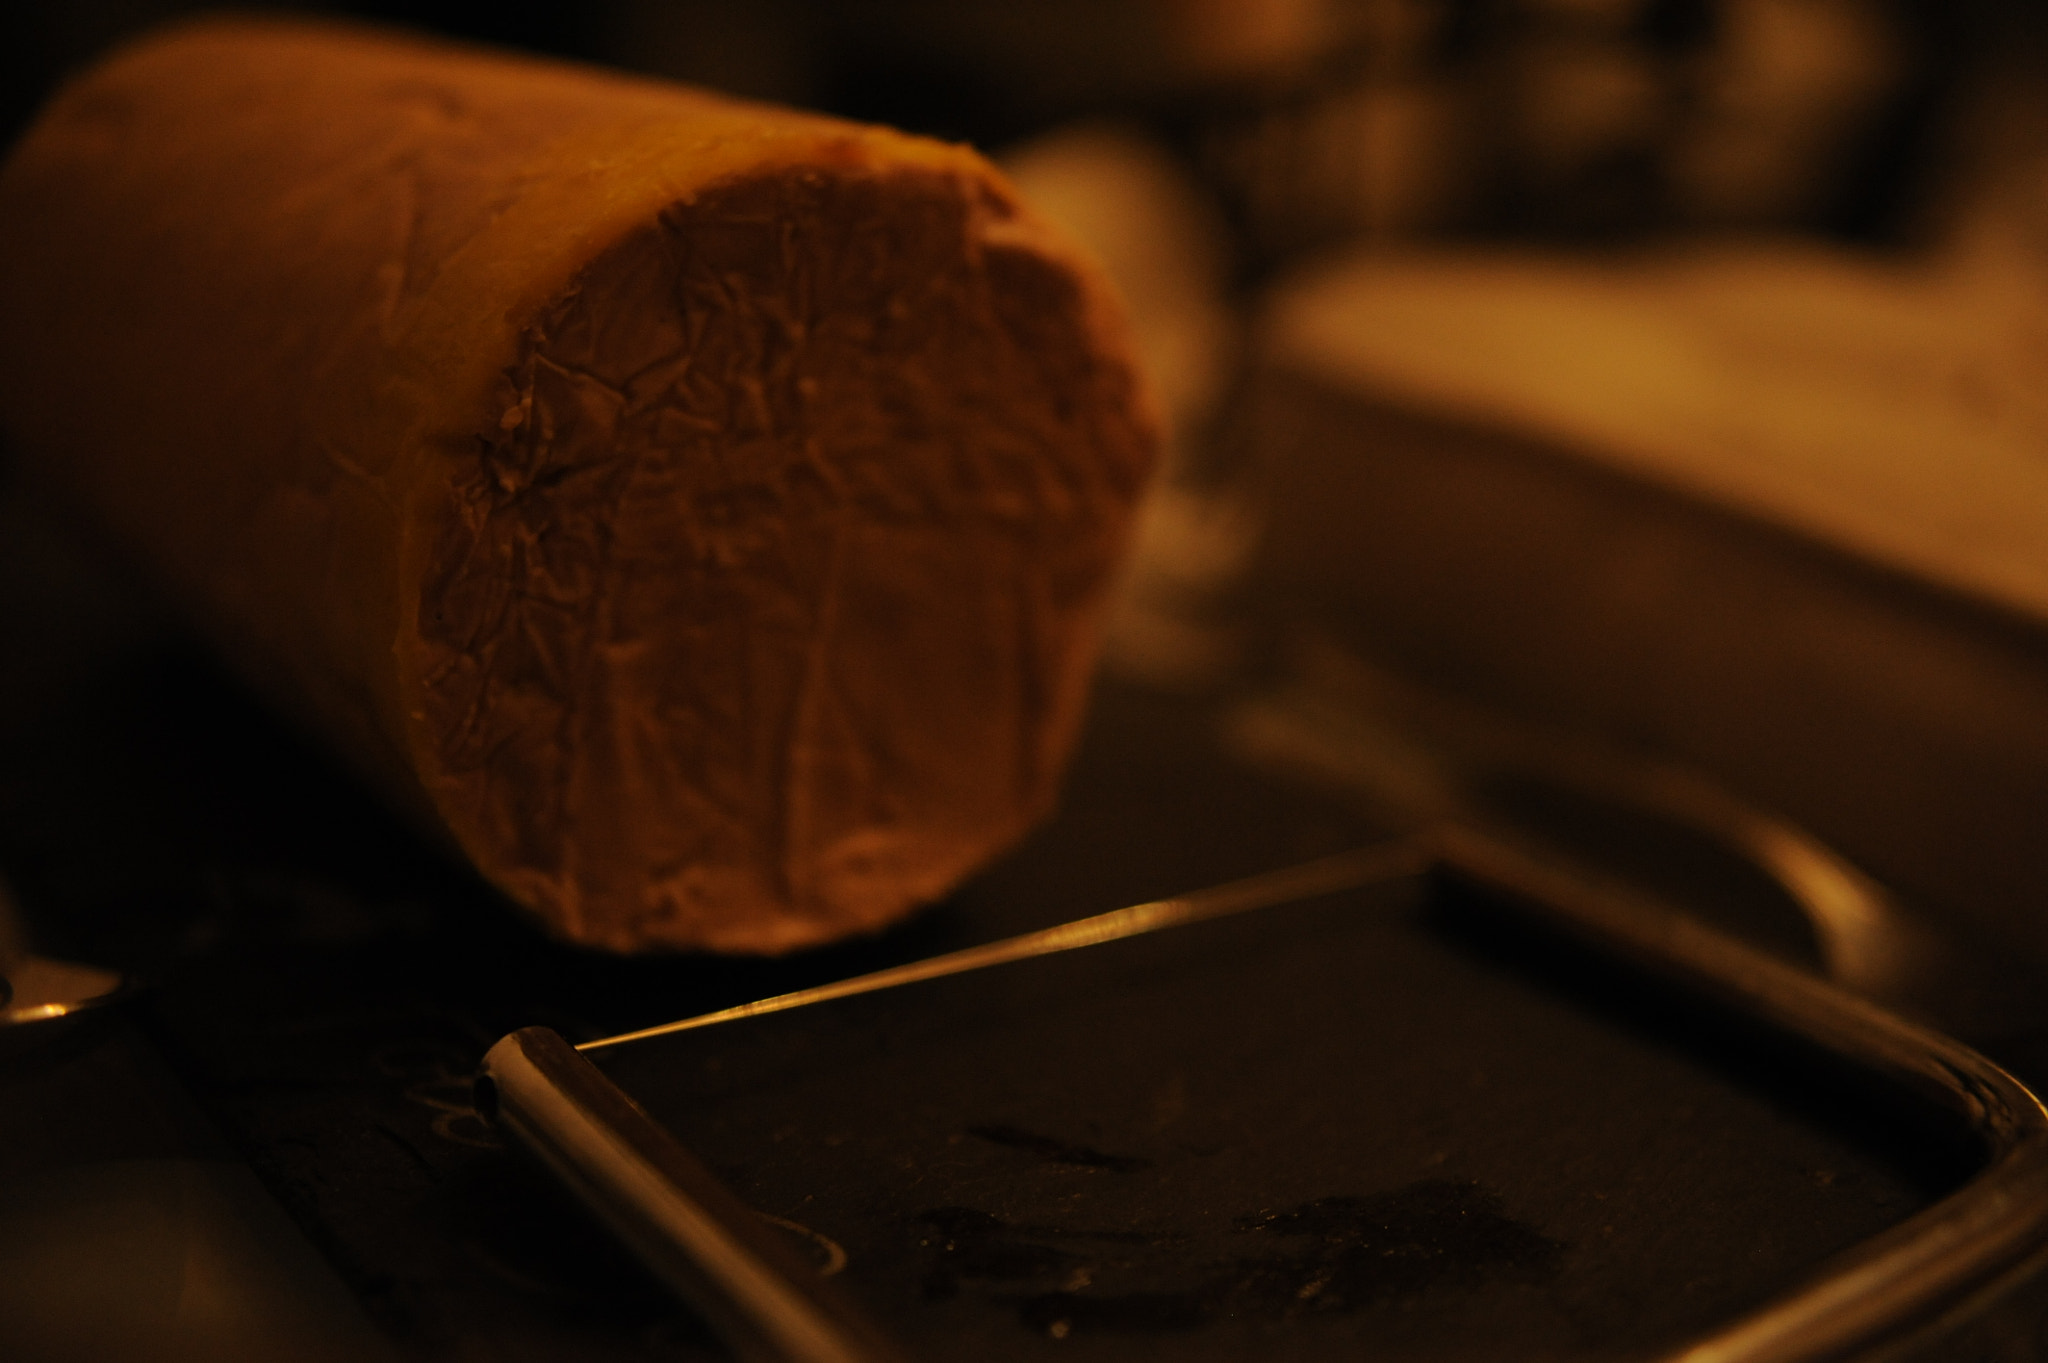 AF Zoom-Nikkor 35-135mm f/3.5-4.5 N sample photo. Foie gras photography